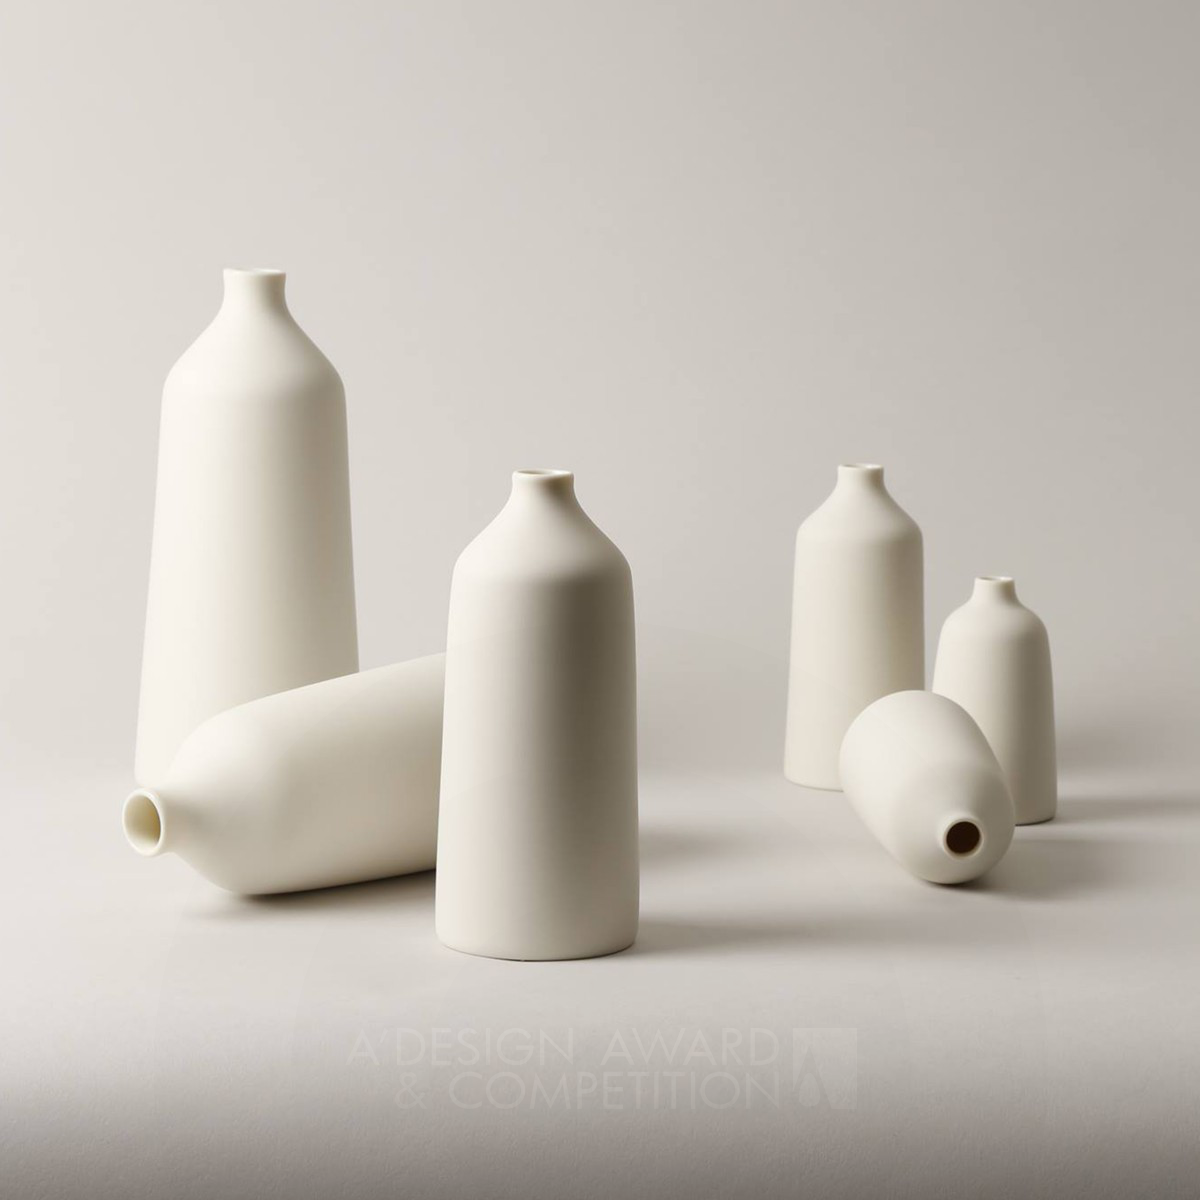 Noiseless: Işığın ve Gölgenin Dengesini Yakalayan Minimalist Vazo Tasarımı